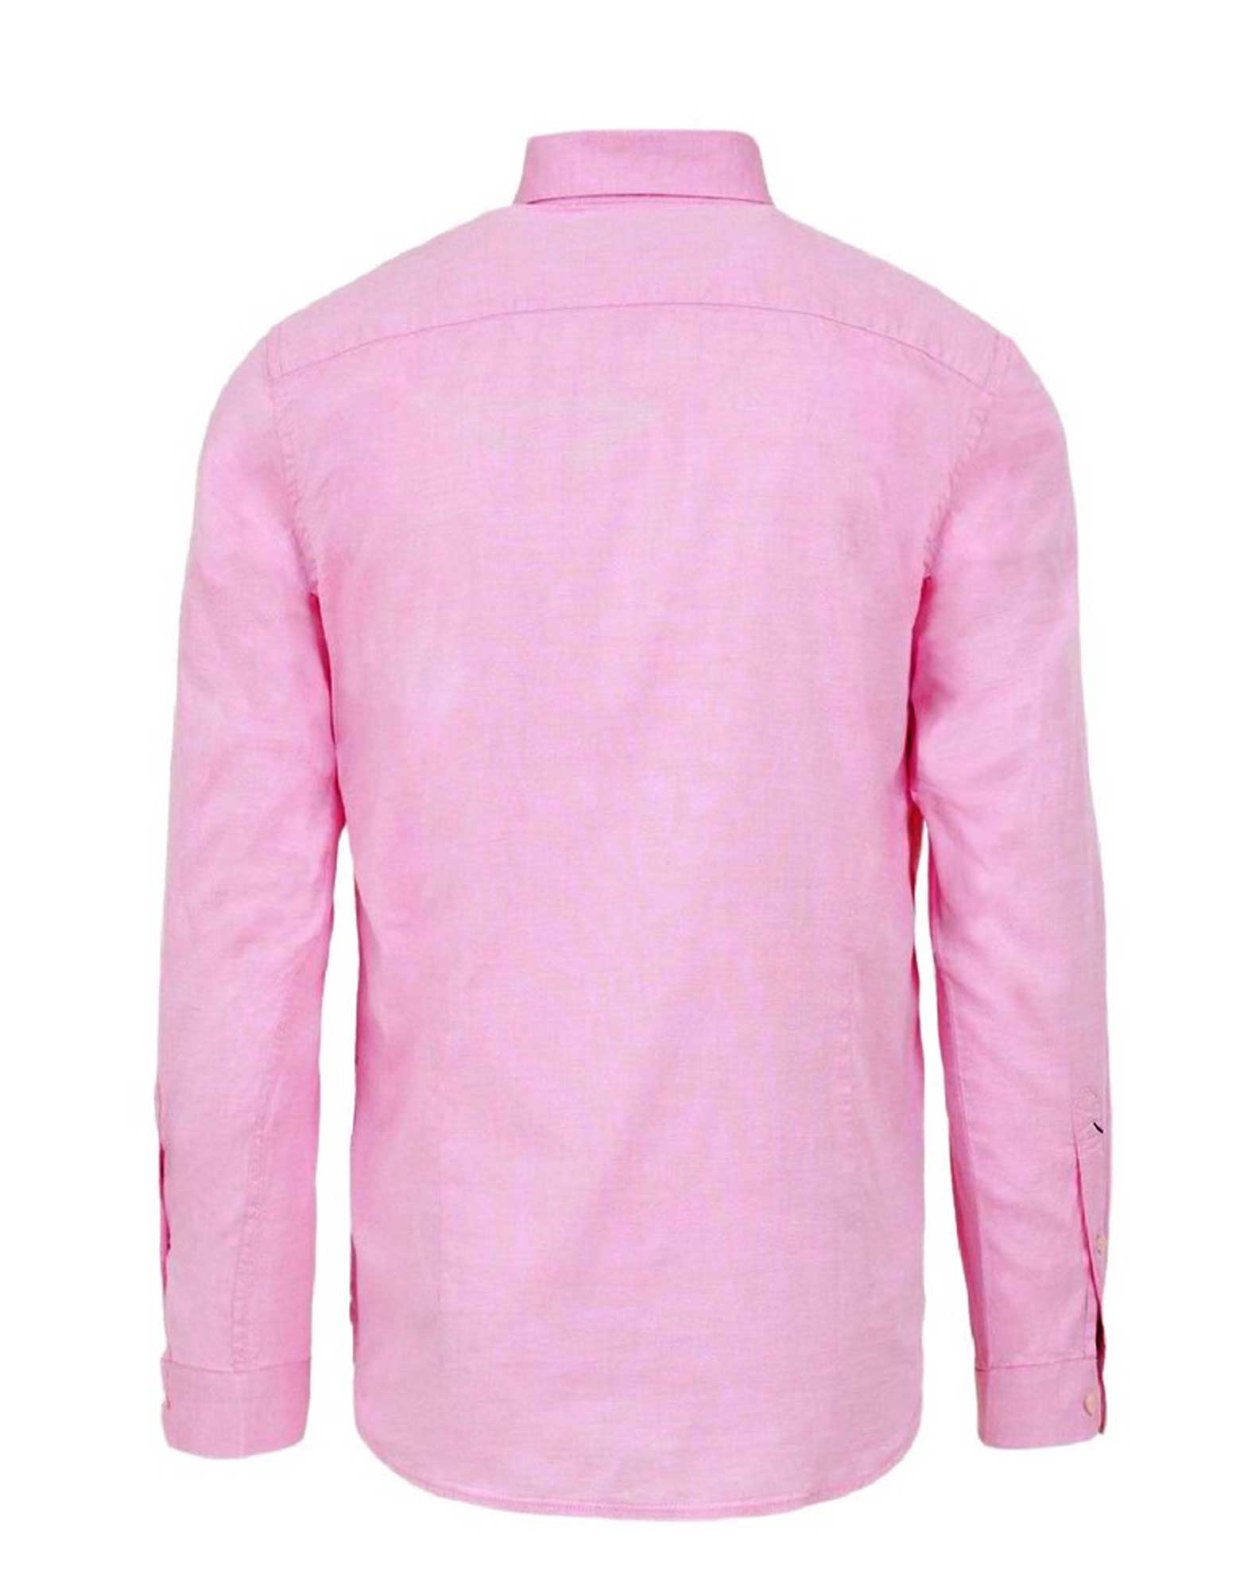 U.S Polo ASSN Evan shirt pink